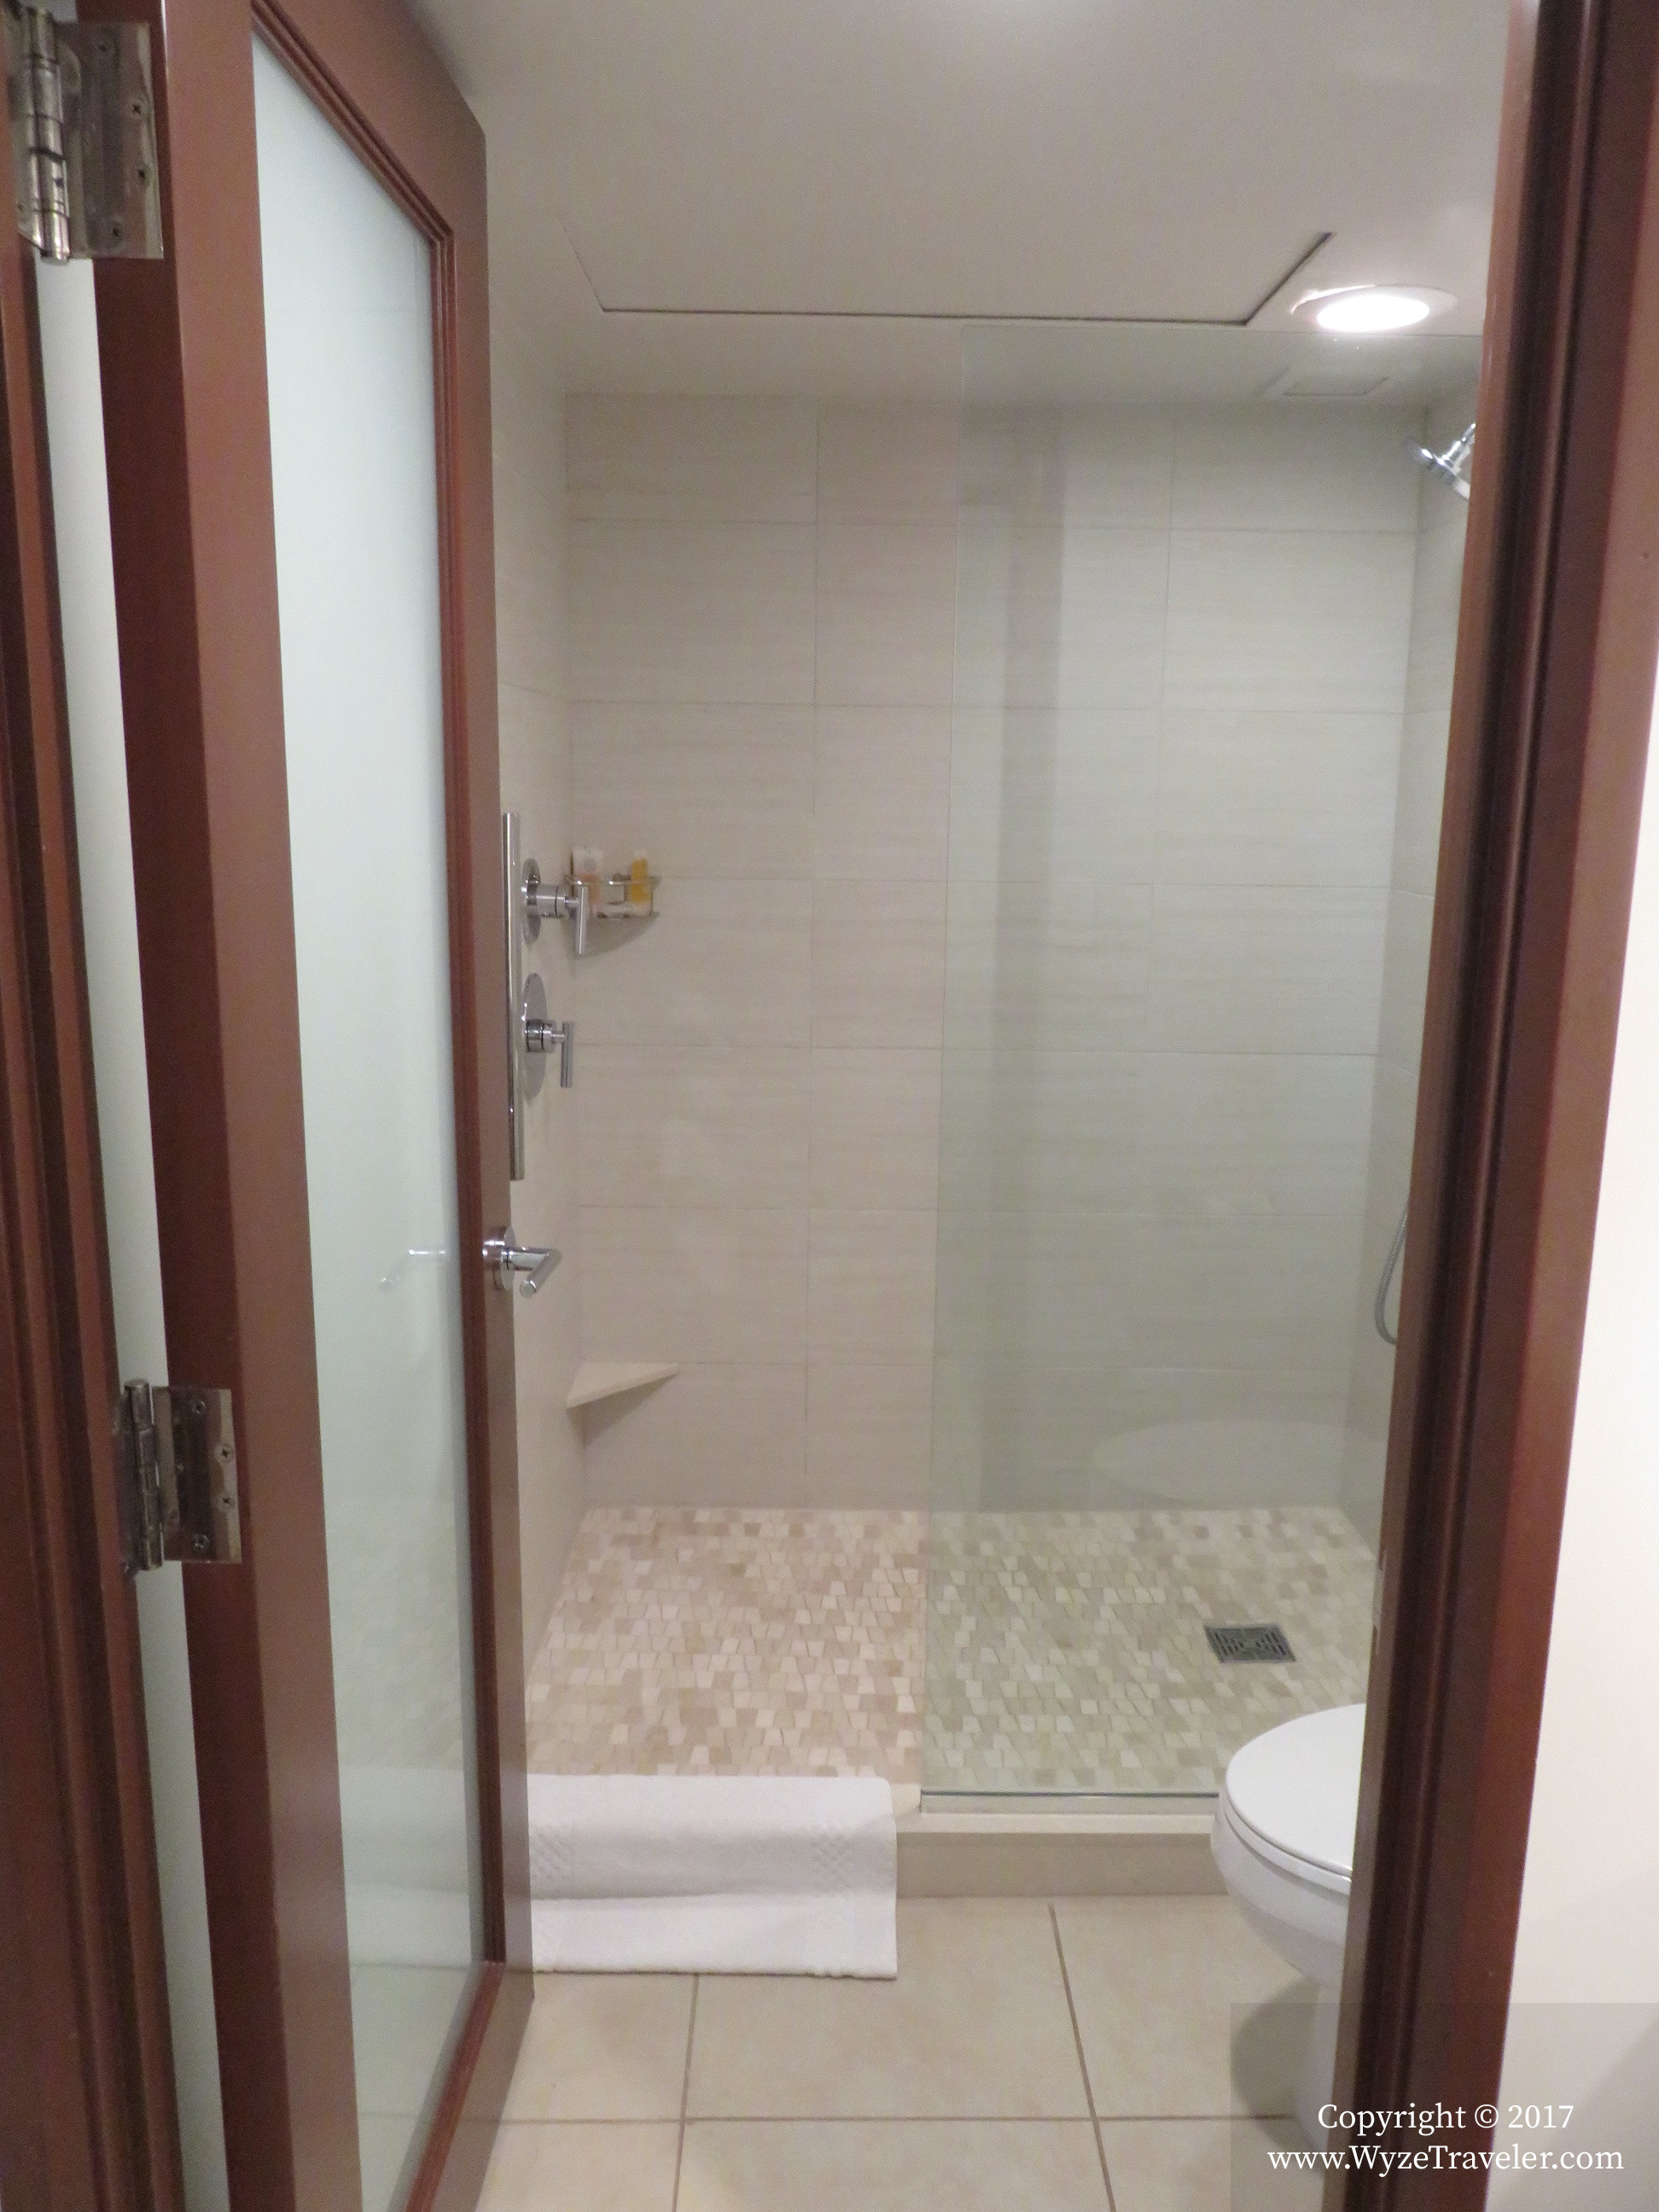 King oceanfront room- Shower